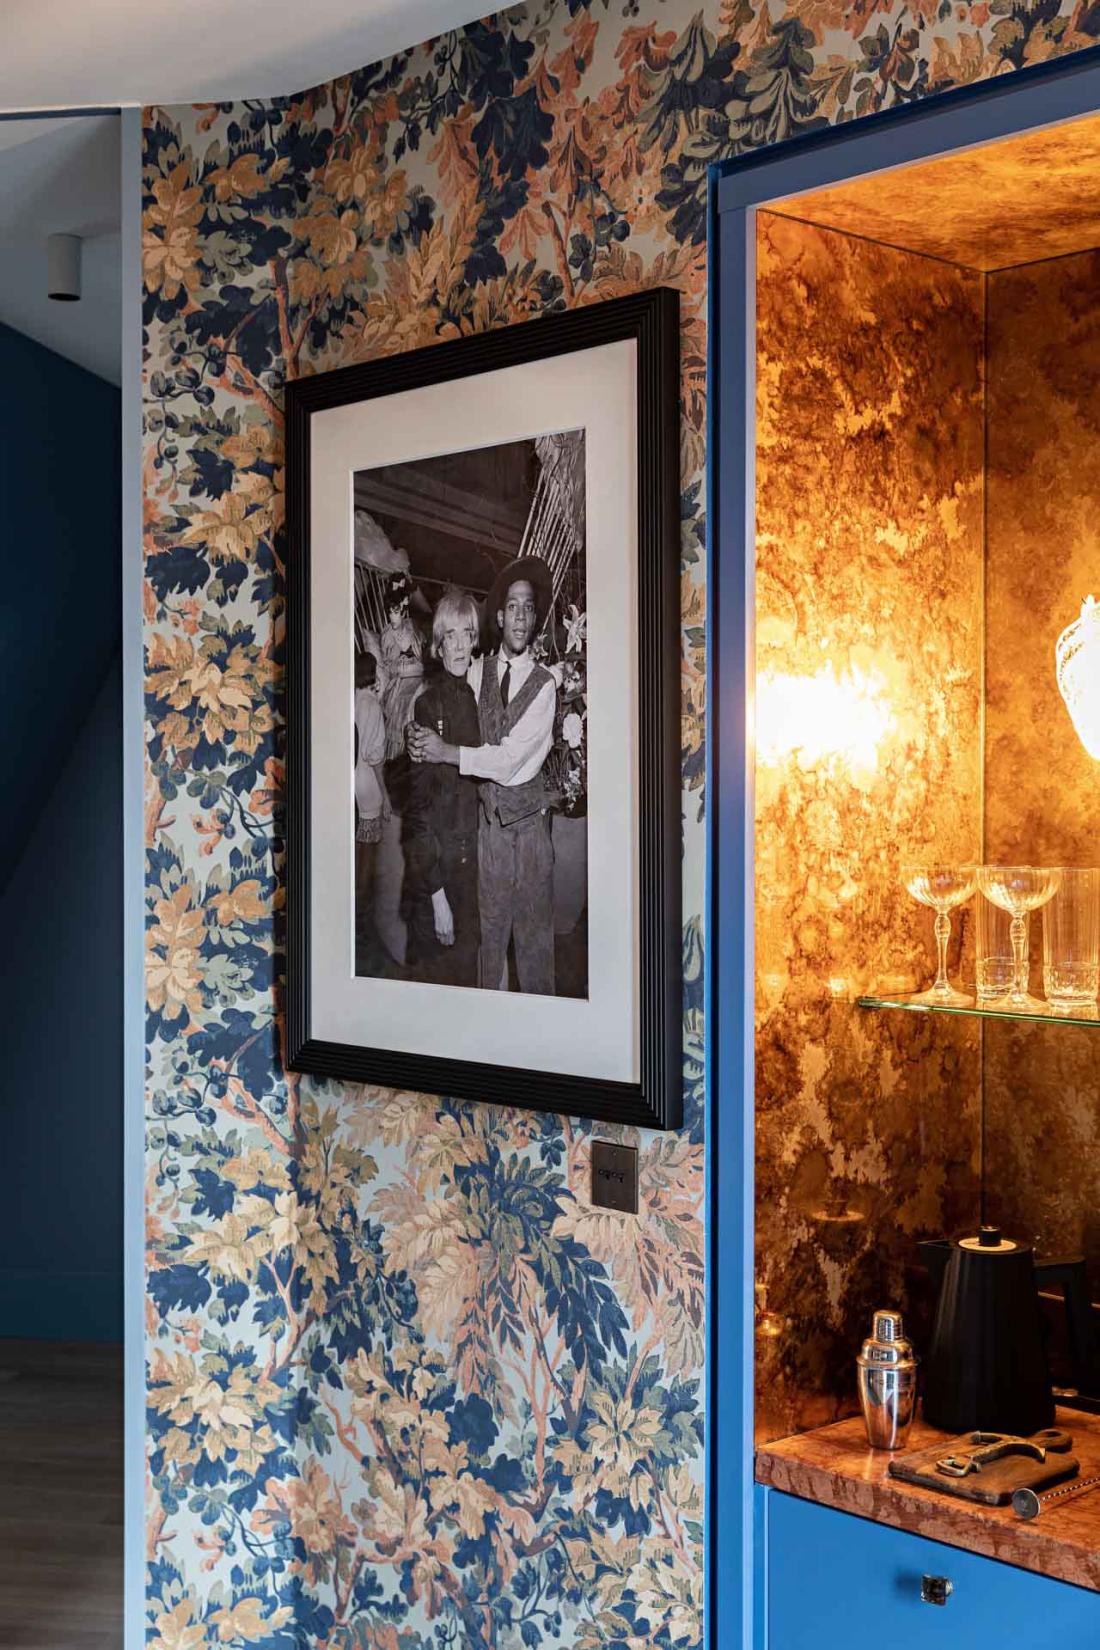 Des photographies de duos fameux ornent les murs des chambres. Ici les indomptables Andy Wharol et Jean-Michel Basquiat.